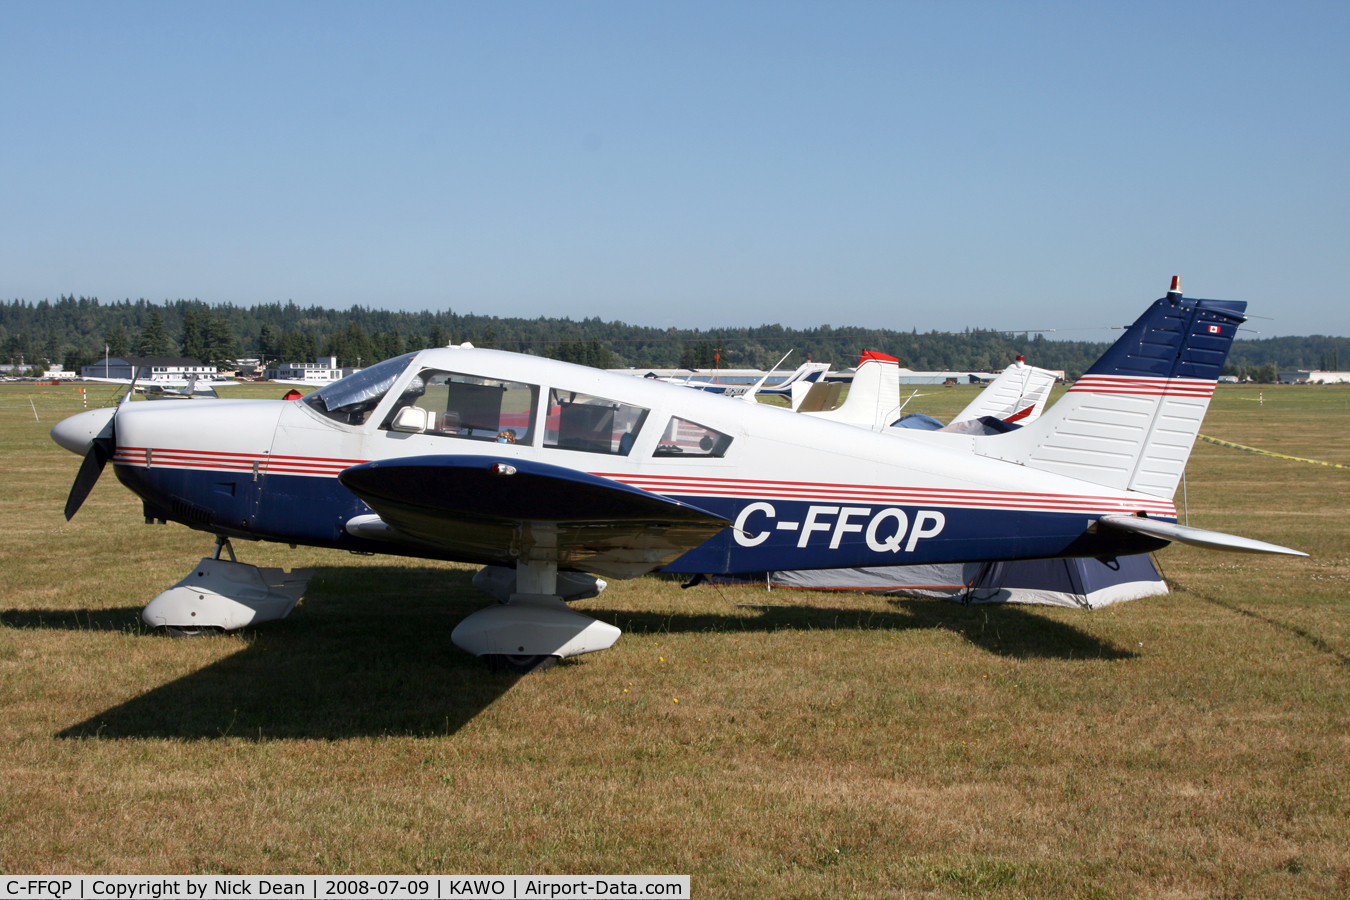 C-FFQP, 1973 Piper PA-28-180 C/N 28-7305127, =